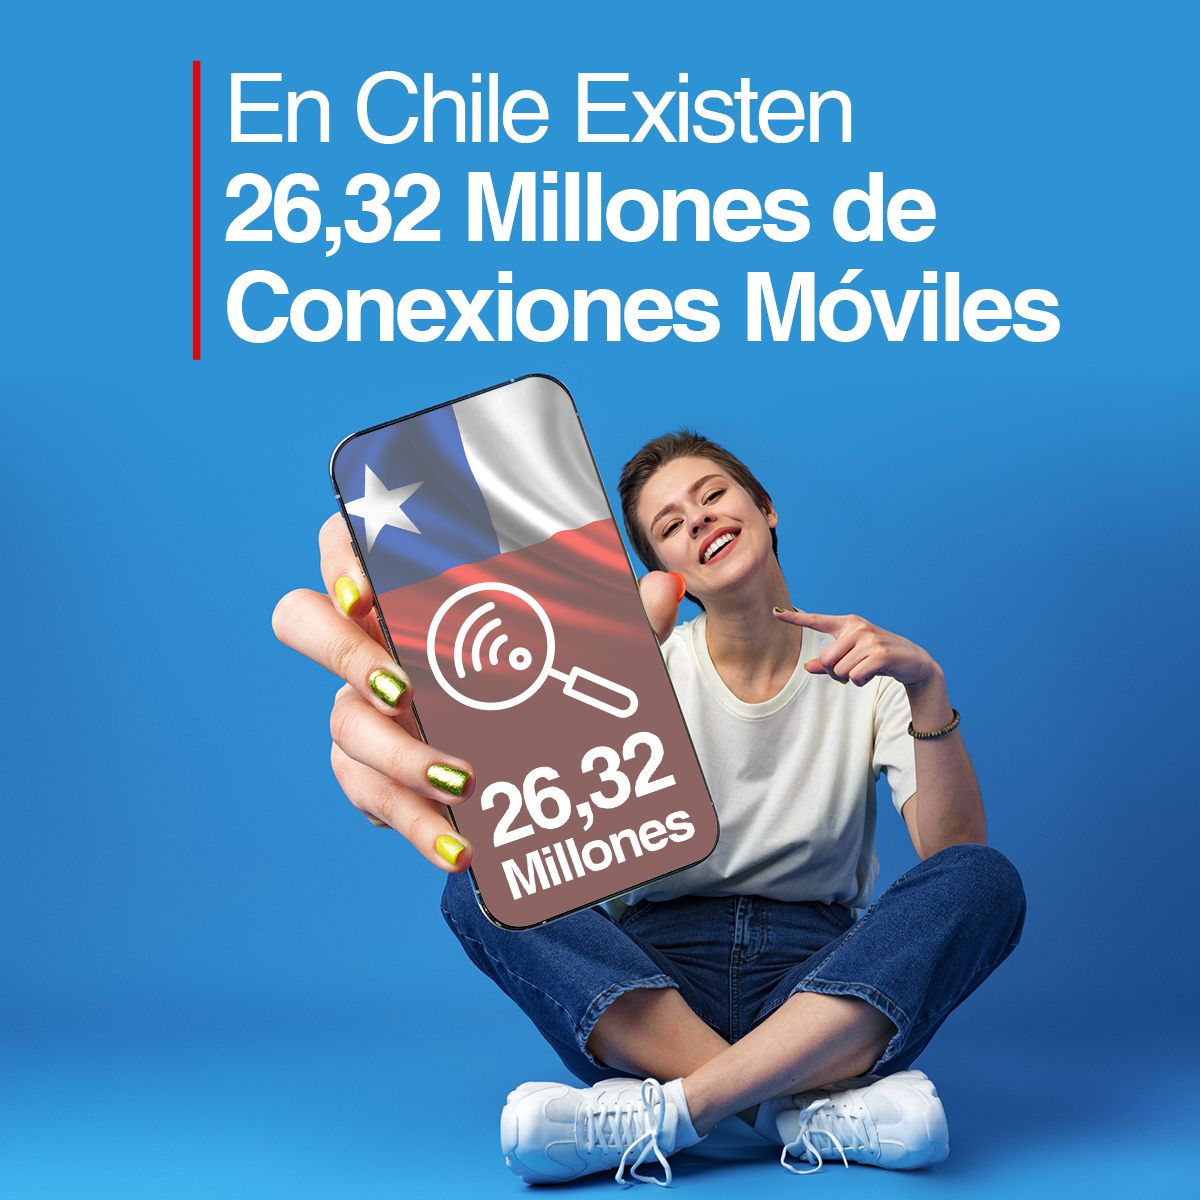 En Chile Existen 26,32 Millones de Conexiones Móviles